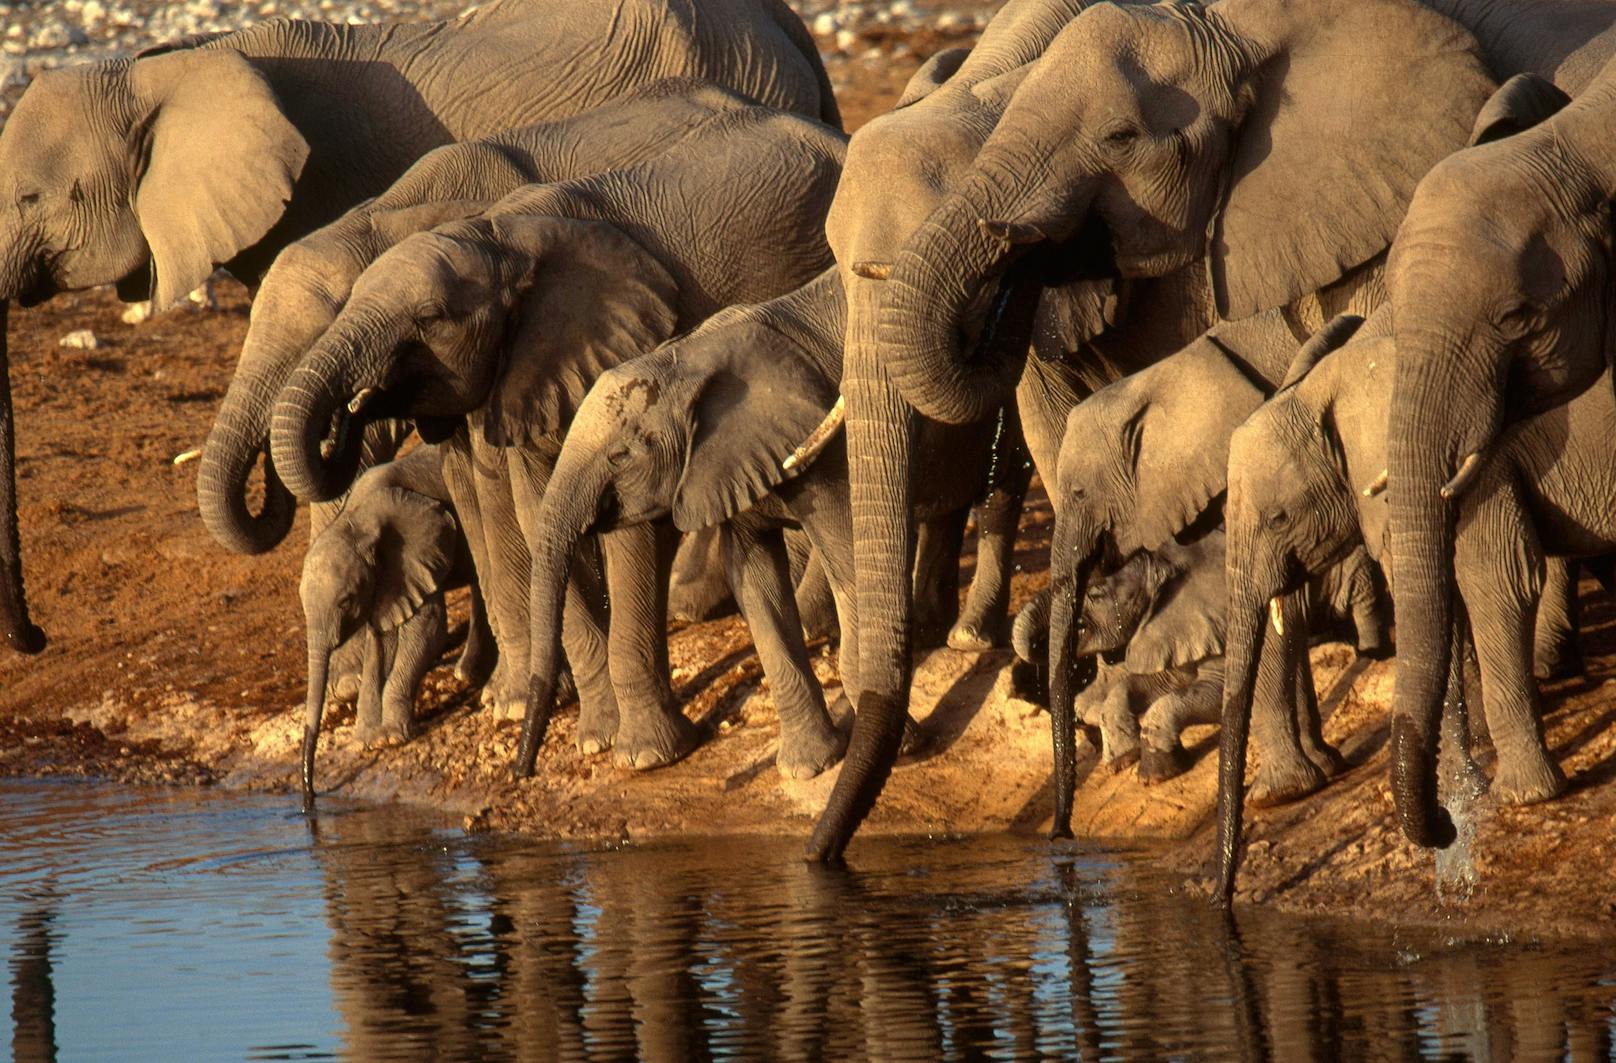 Um die Anzahl der Elefanten zu verringern, will Namibia nun 170 lebende Elefanten verkaufen. 